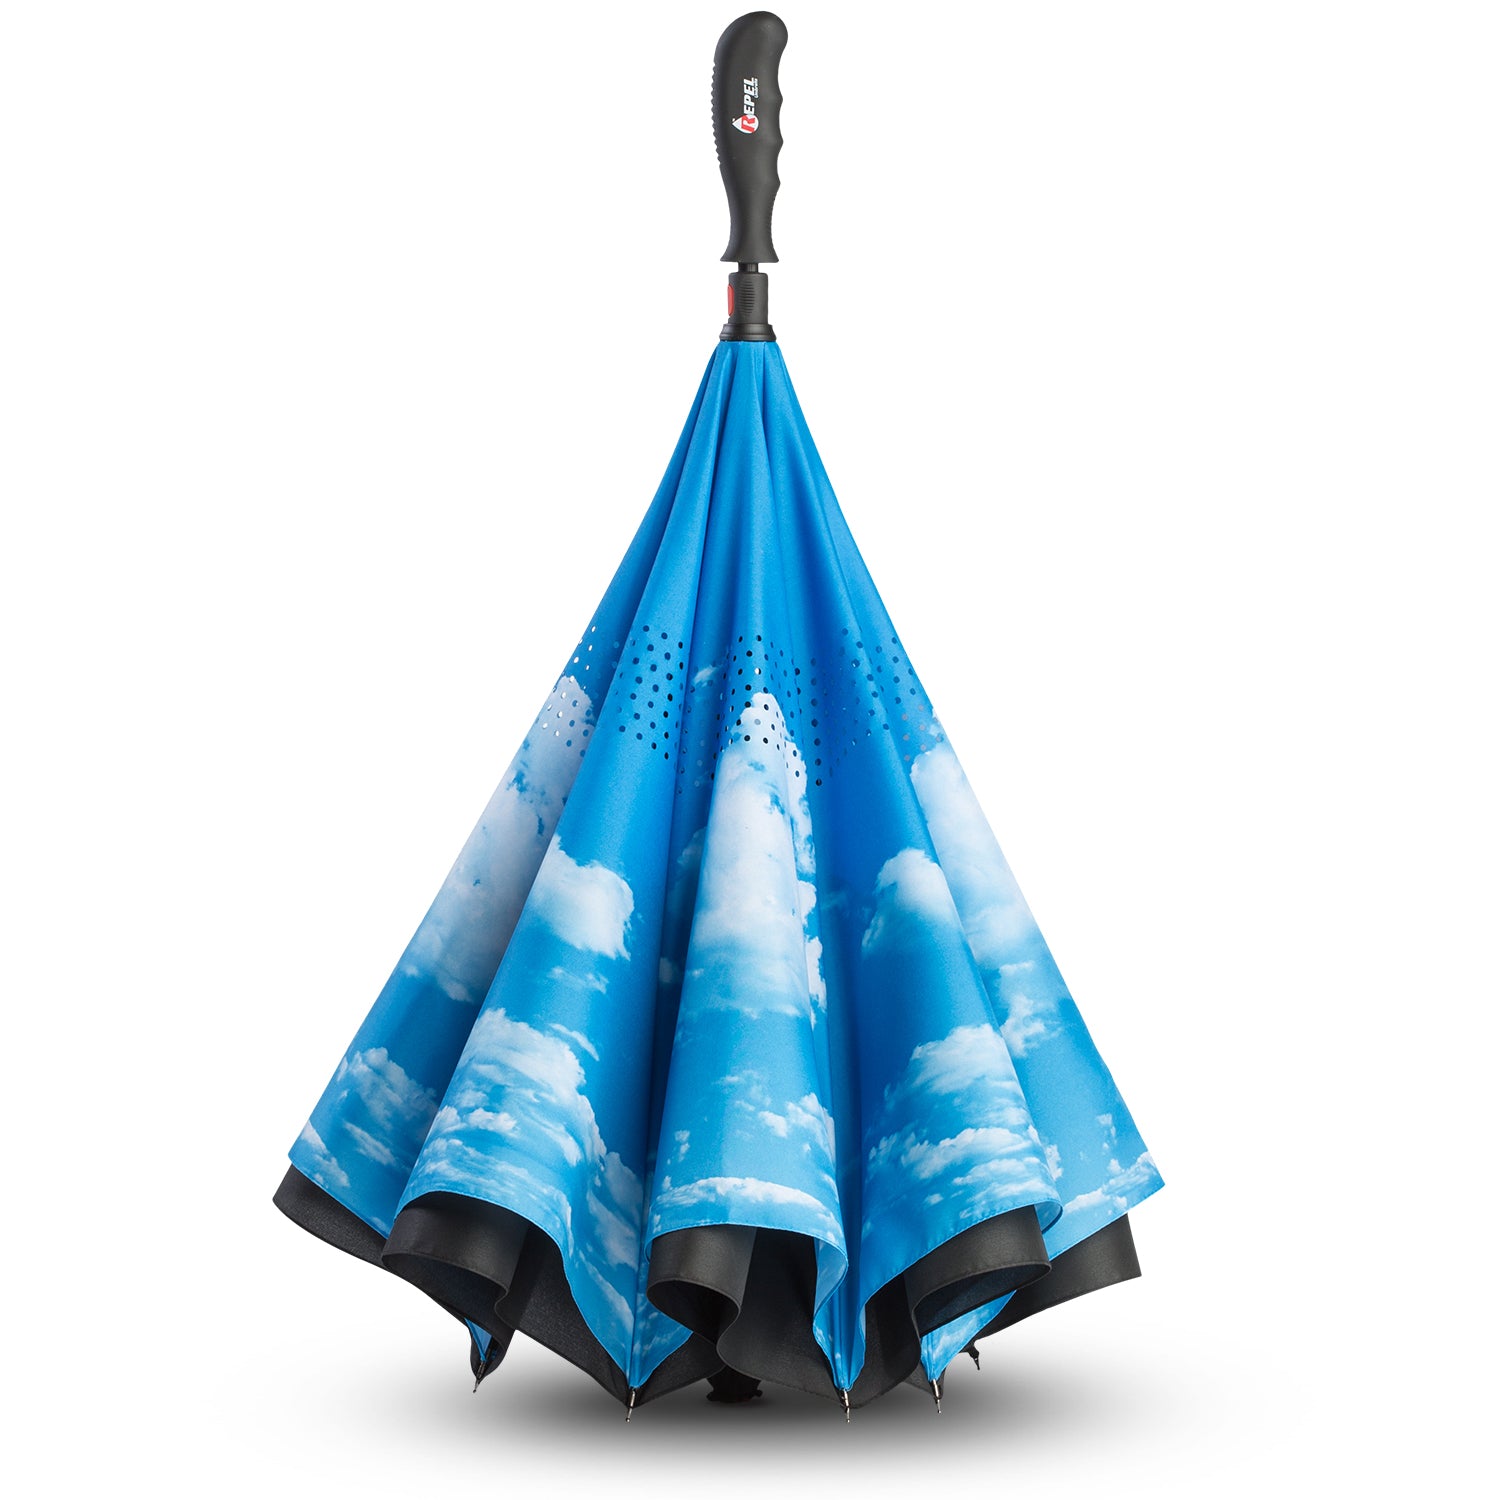 Repel Umbrella | Umbrellas Golf, Reverse Travel